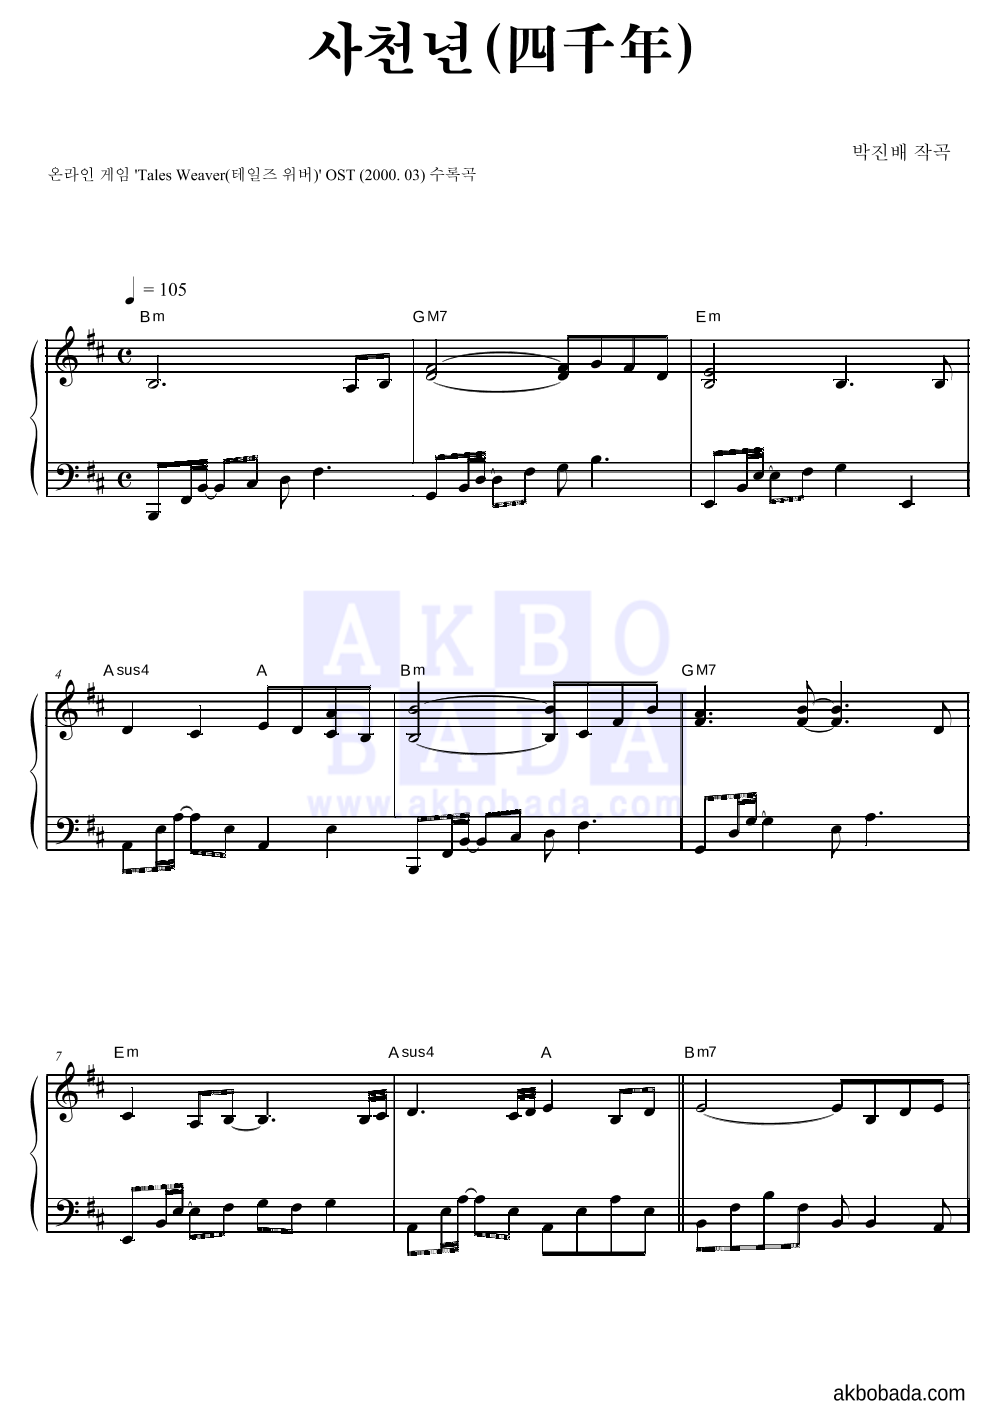 테일즈위버 OST - 사천년(四千年) 피아노 2단 악보 